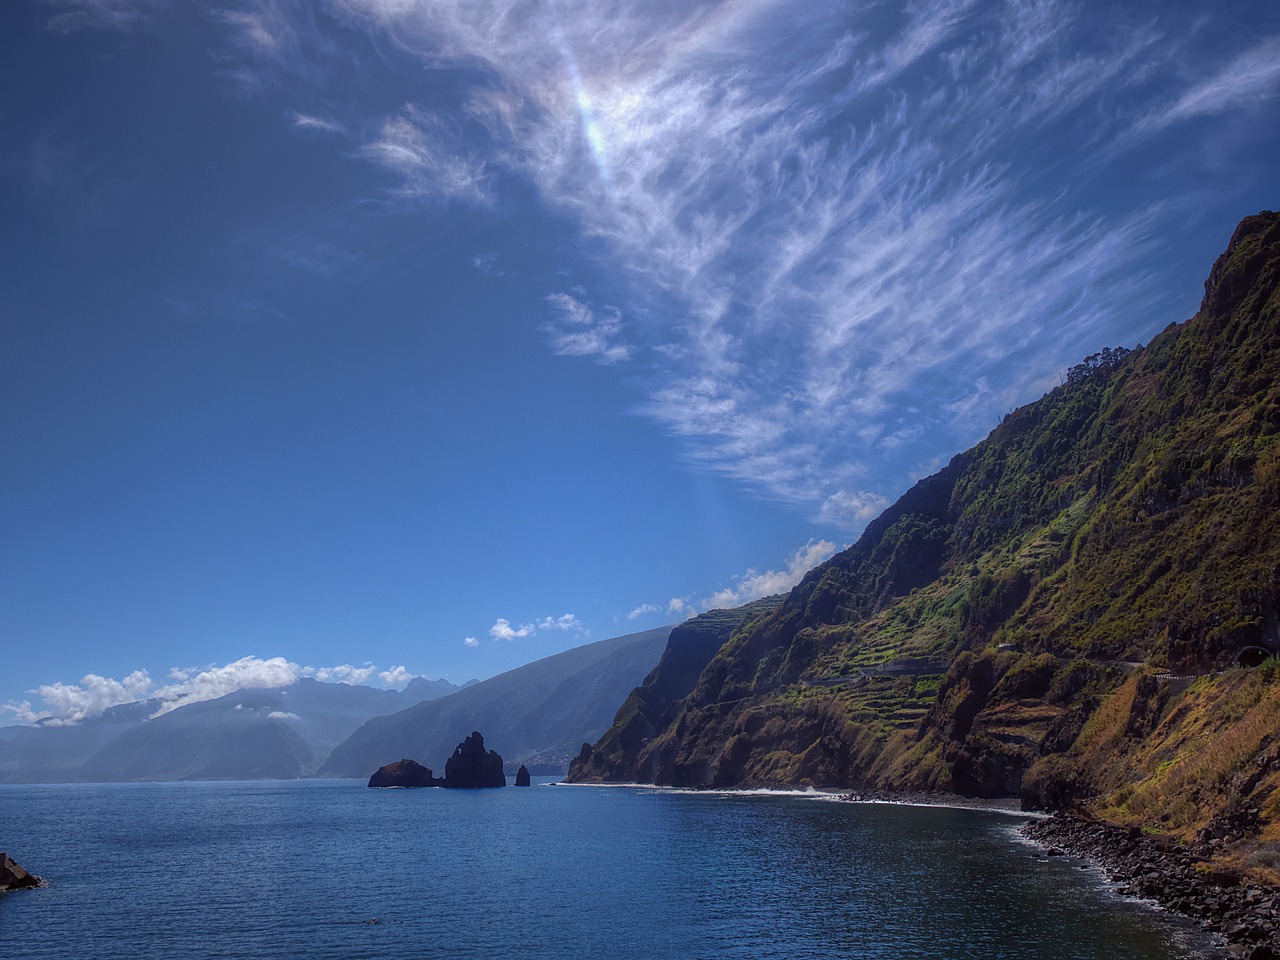 Ein beliebtes und sehenswertes Ganzjahresreiseziel: Madeira. Bildquelle: Pixabay.de